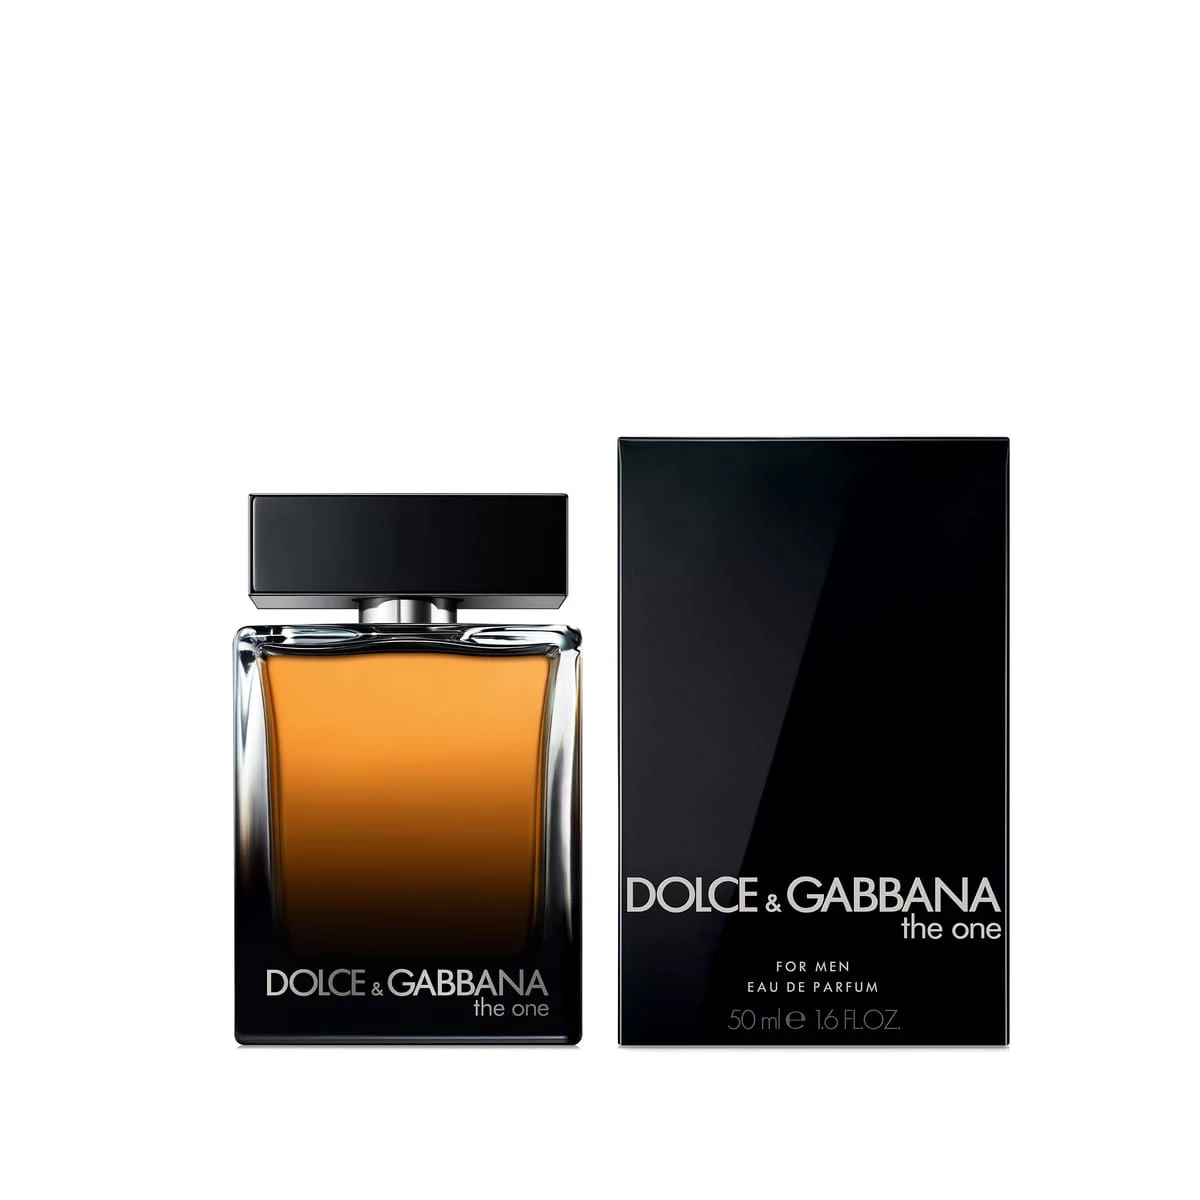 The One for Men de Dolce&Gabbana - Eau de Parfum - Incenza